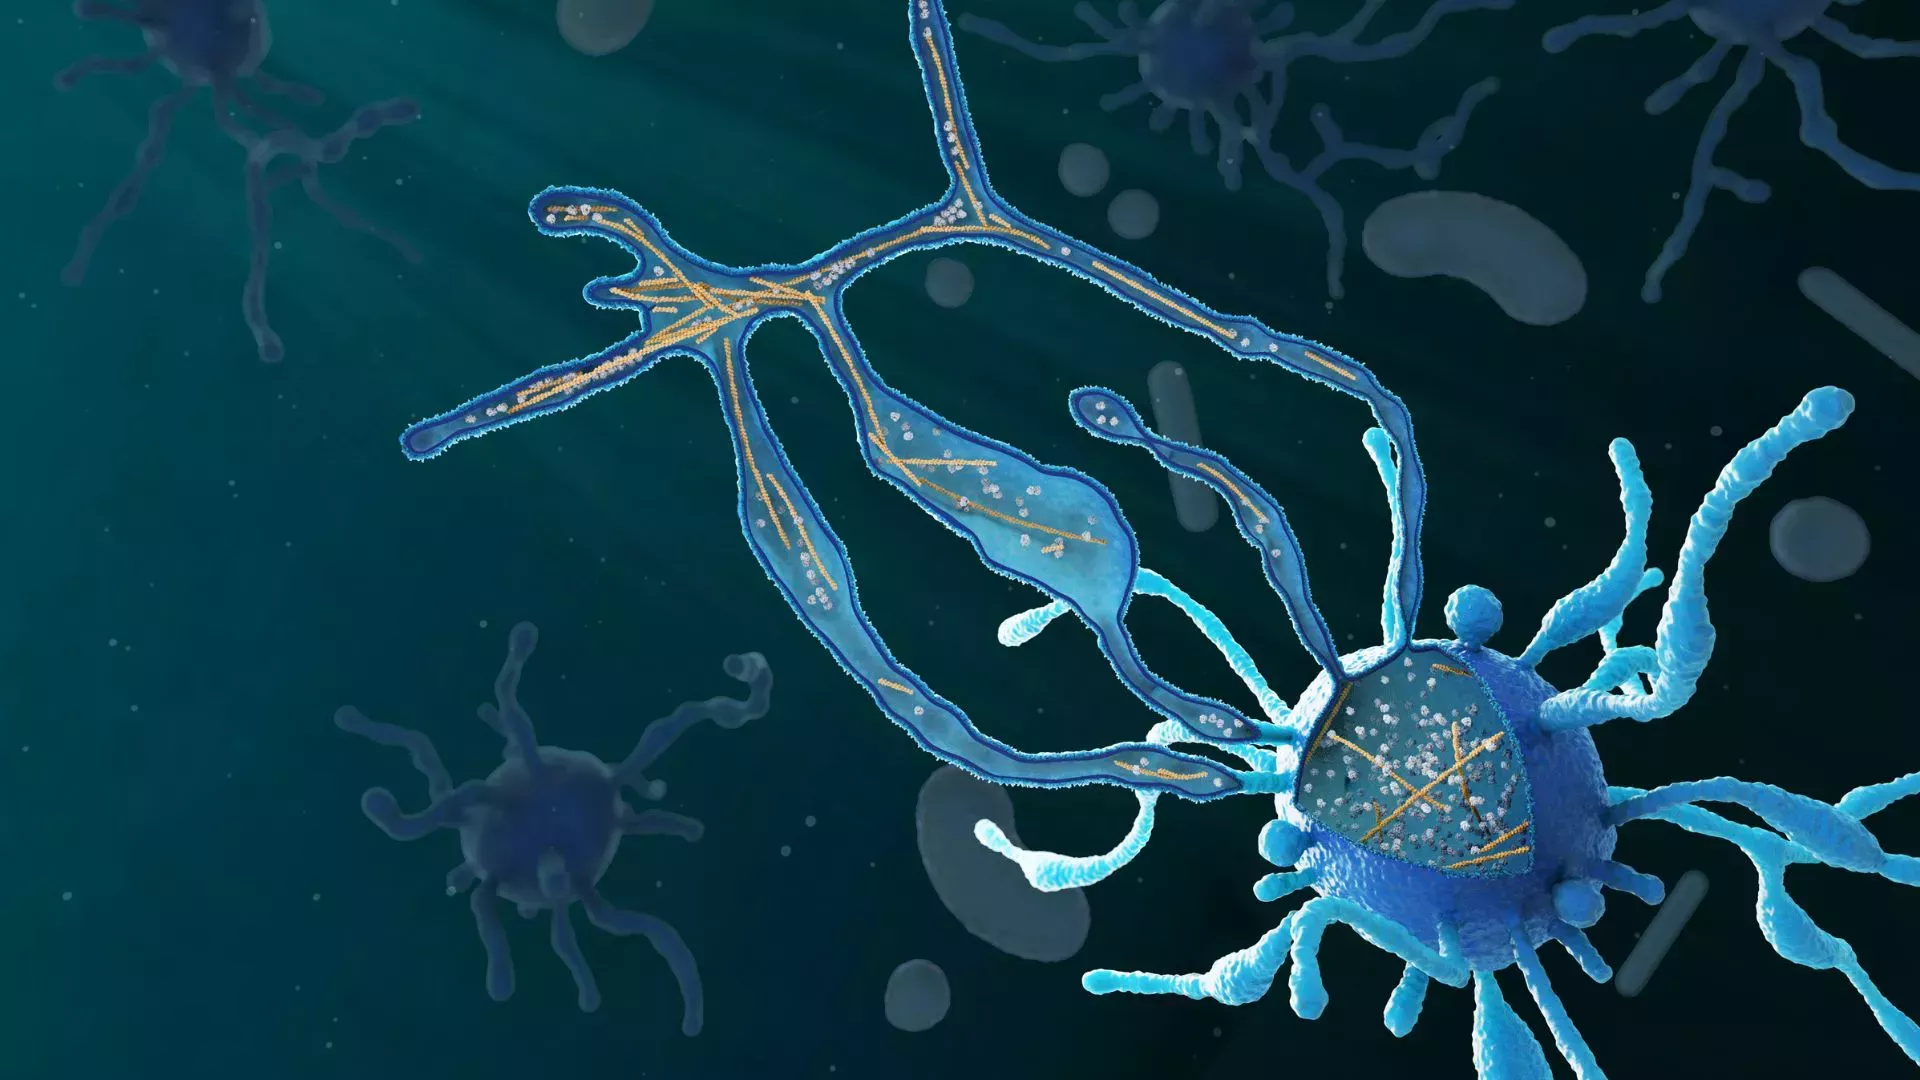 Un enorme microbio con tentáculos podría ser el antepasado directo de toda la vida compleja